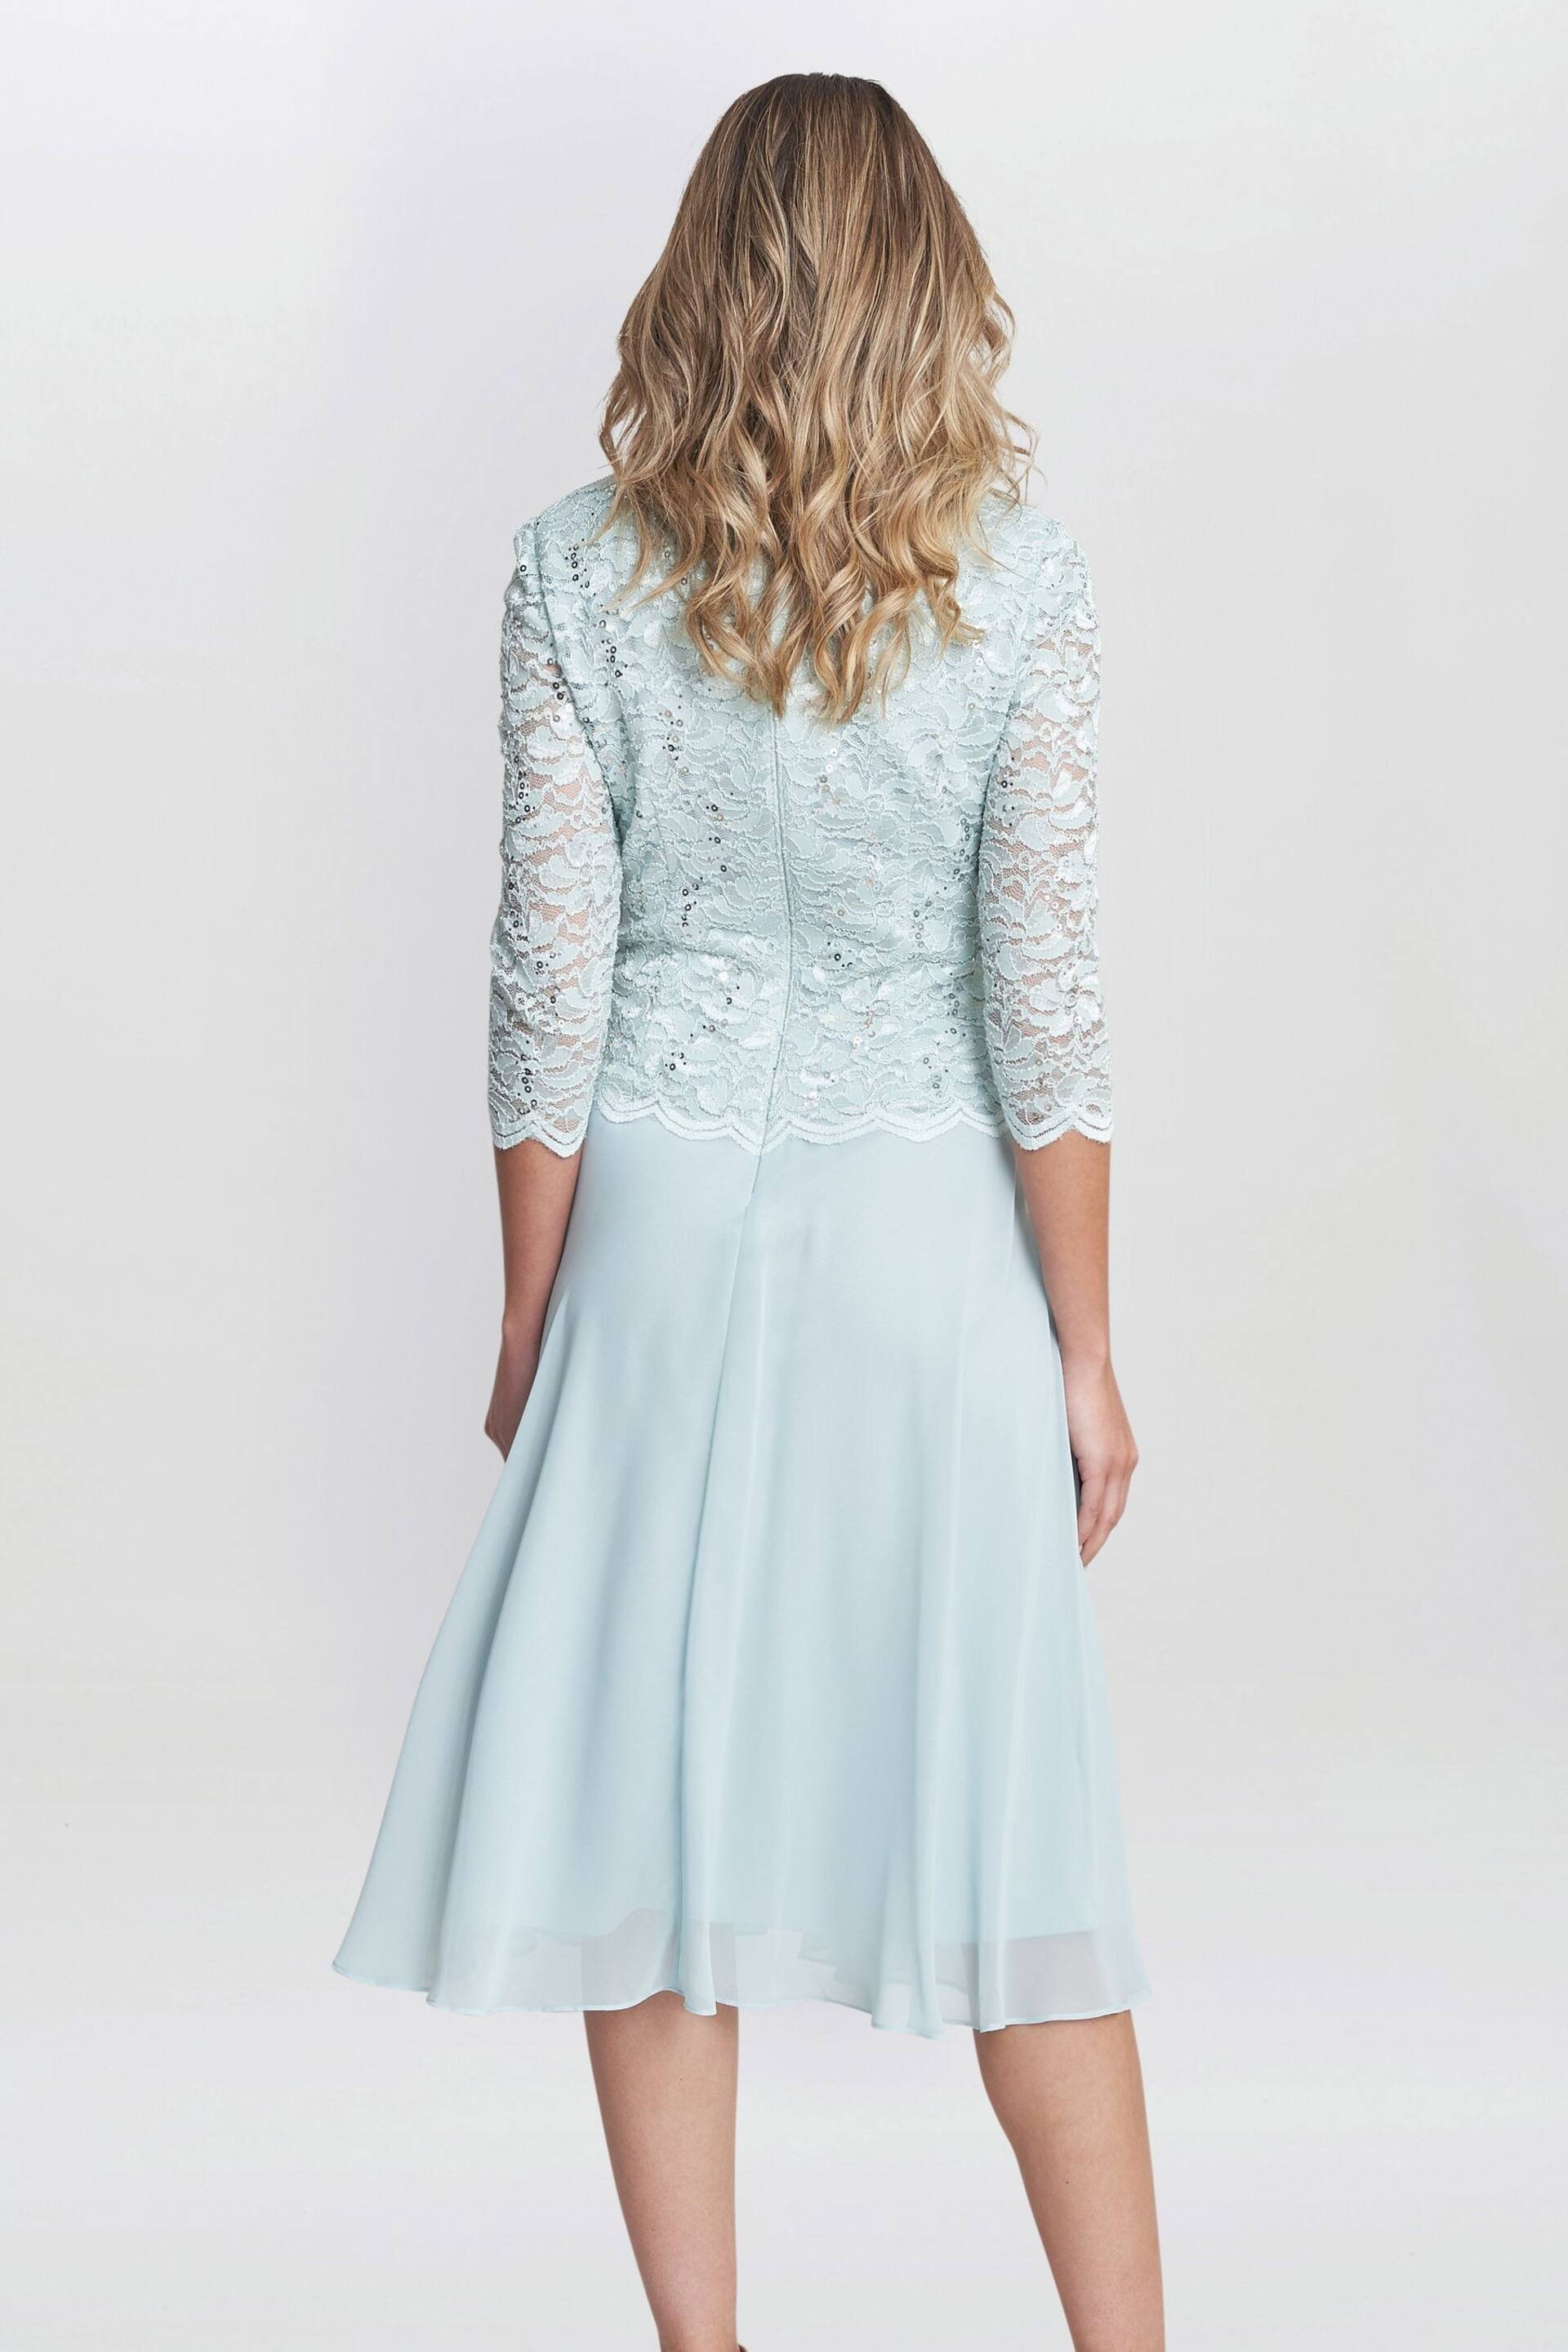 Gina Bacconi Rona Midi Dress With Lace Bodice & Chiffon Skirt - Image 2 of 6